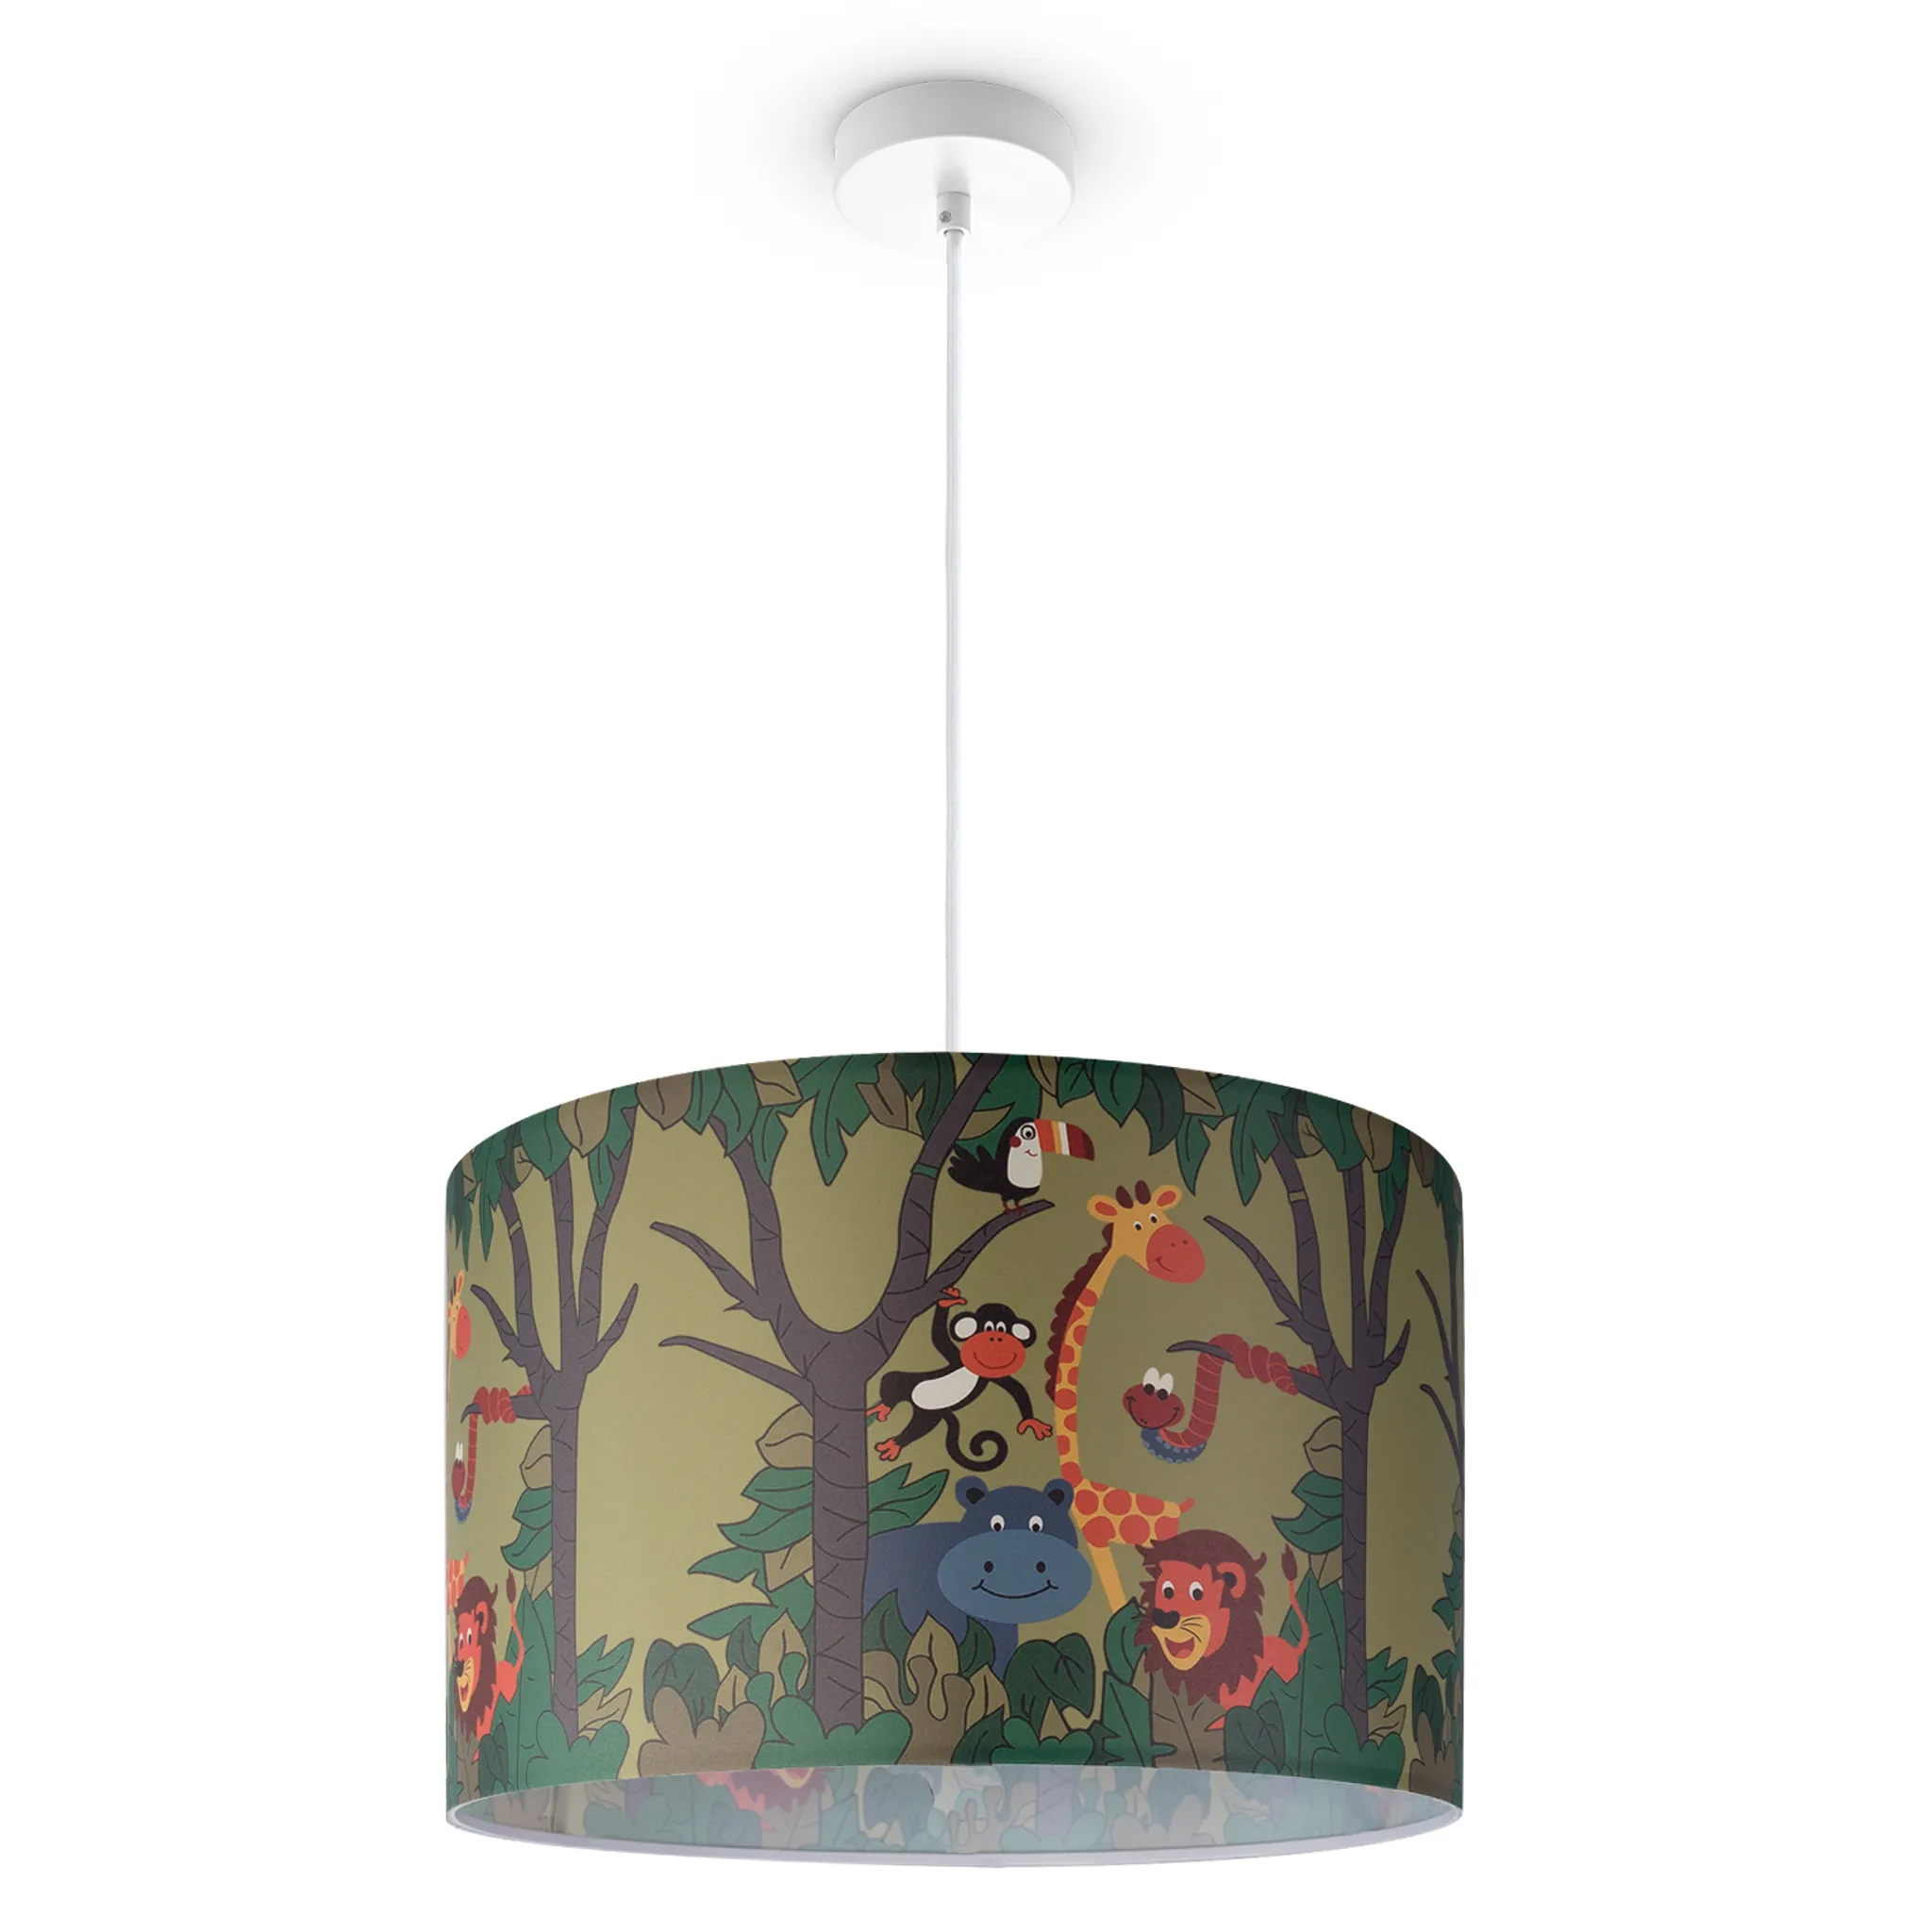 Kinderzimmer Leuchten Deckenlampe Pendelleuchte Dschungel E27 Größe LED Kinderlampe Grün Tier-Motiv / Farbe